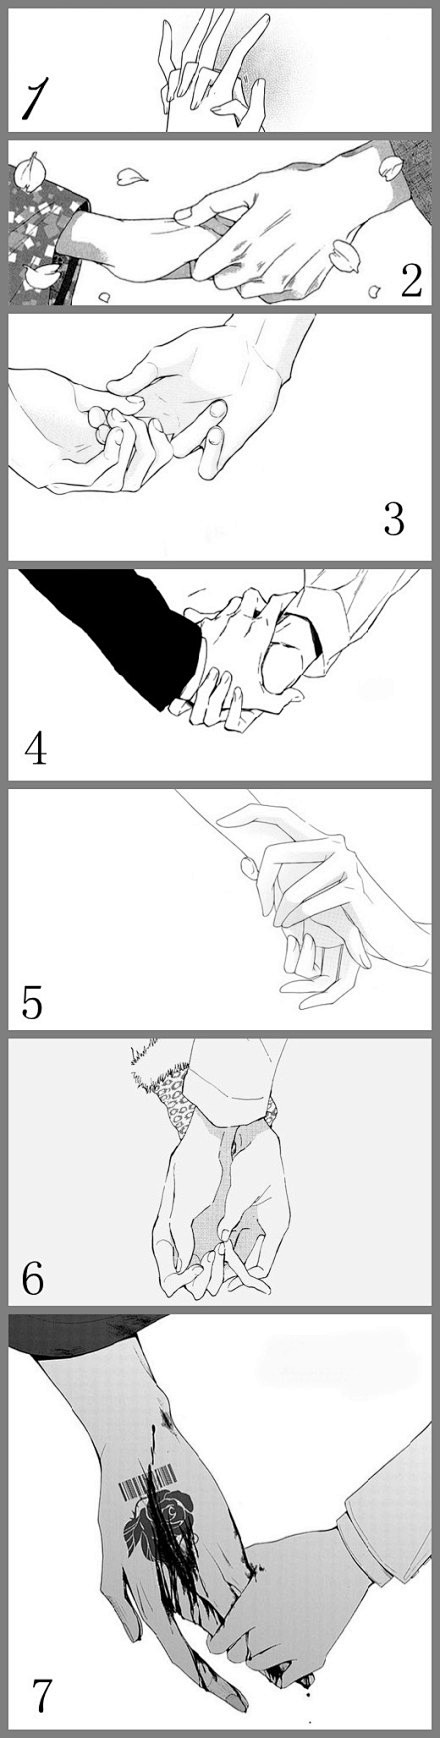 你们喜欢哪种握手的感觉？